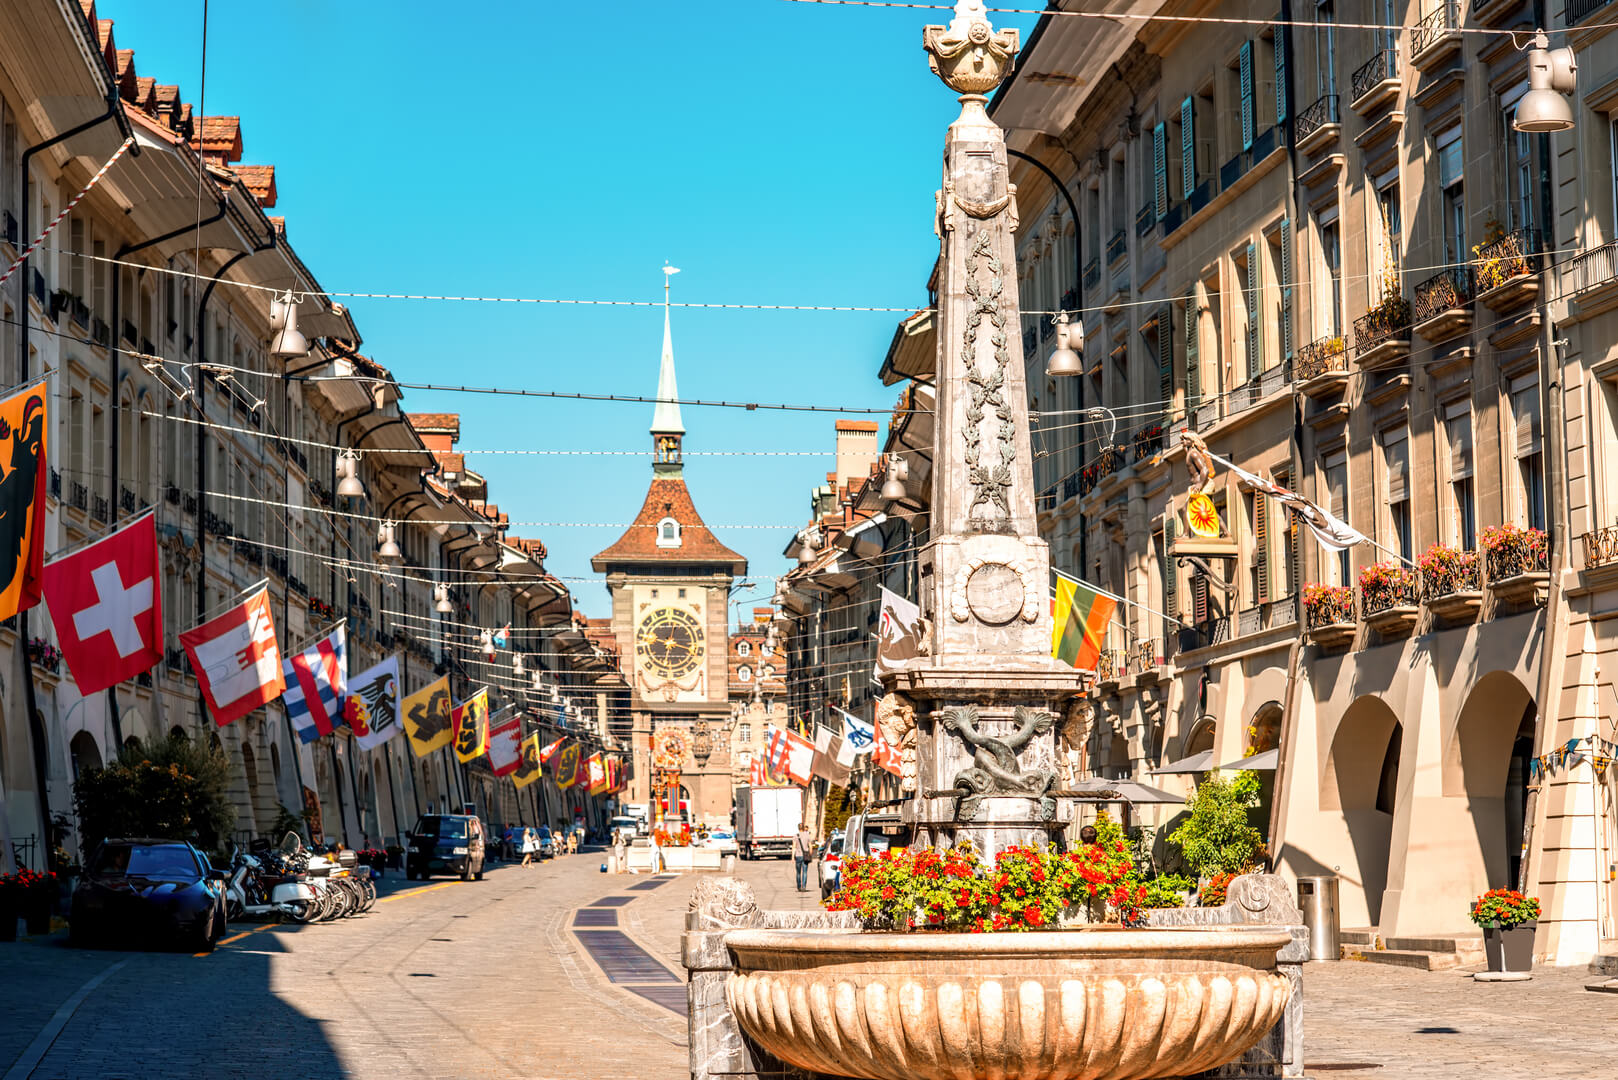 Vista della via Kramgasse con fontana e torre dell'orologio nel centro storico della città di Berna. Si tratta di una popolare via dello shopping e del centro medievale di Berna, Svizzera